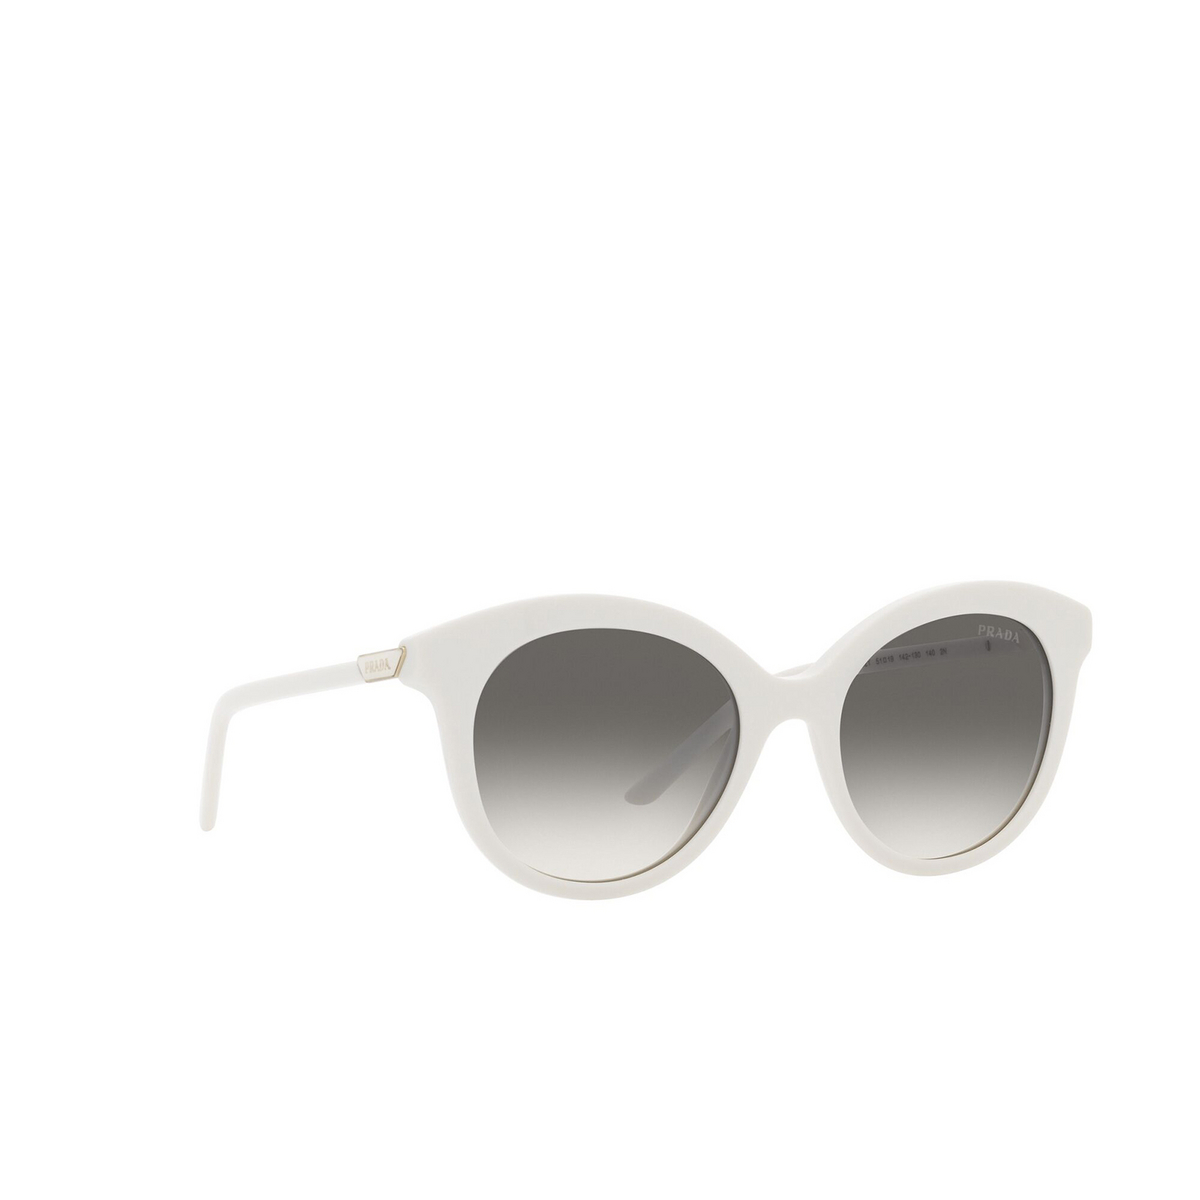 Prada® Round Sunglasses: PR 02YS color Talc 142130 - three-quarters view.